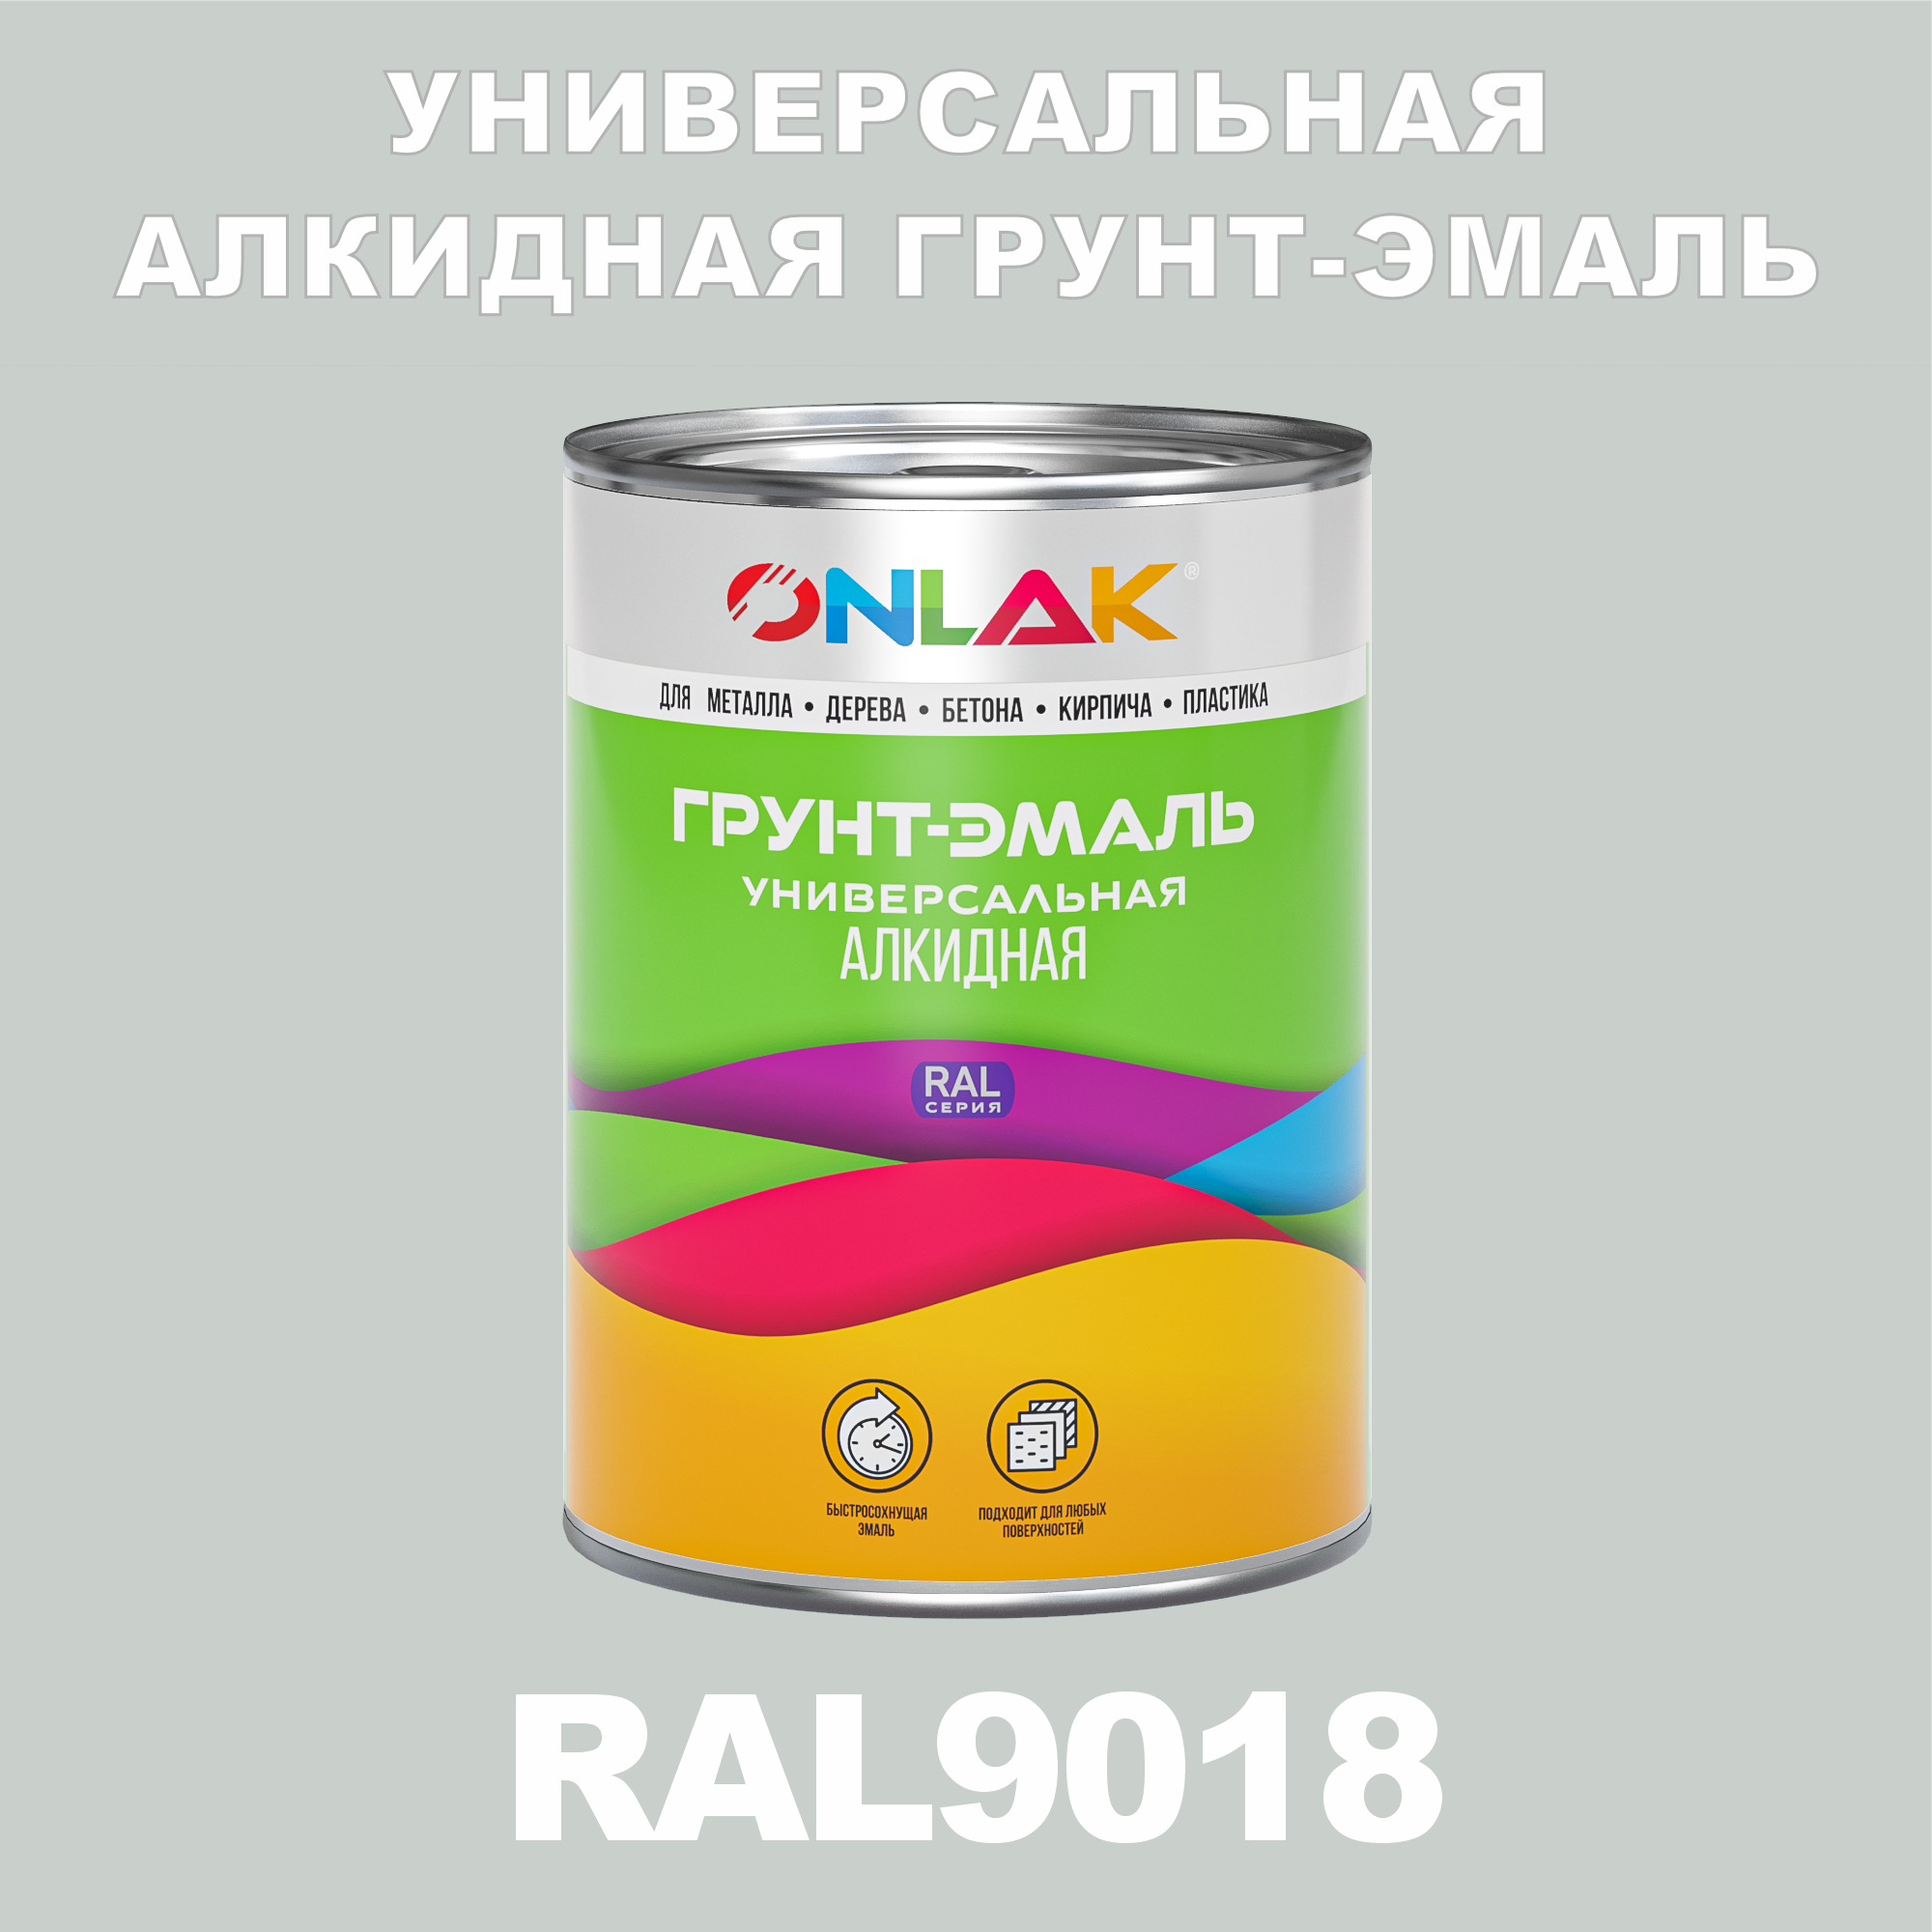 Грунт-эмаль ONLAK 1К RAL9018 антикоррозионная алкидная, по металлу, по ржавчине, 1 кг, грунт эмаль yollo по ржавчине алкидная серая 0 9 кг